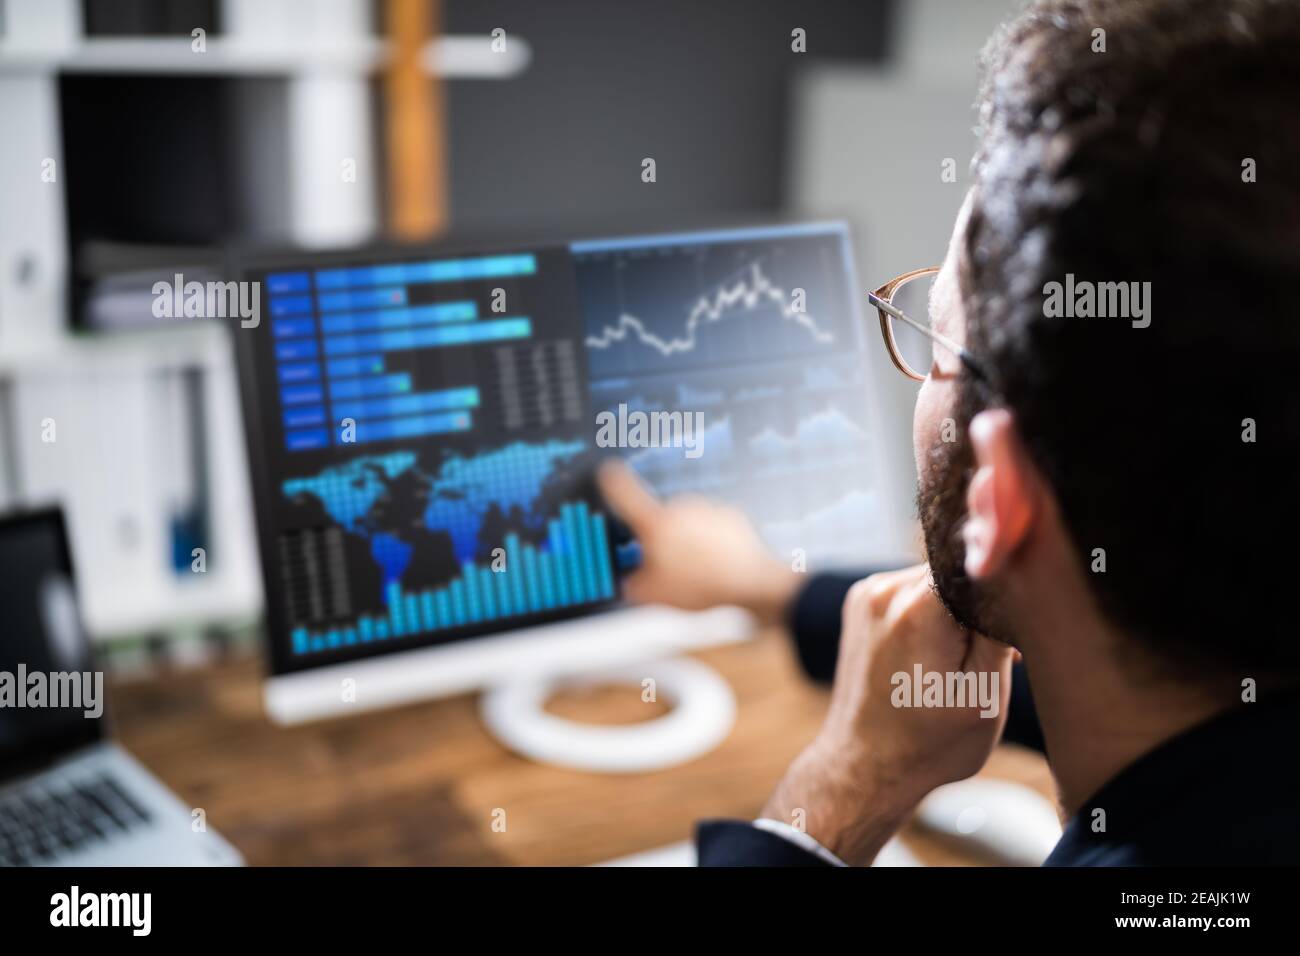 KPI Business Analytics Data Dashboard. Analyst Stock Photo